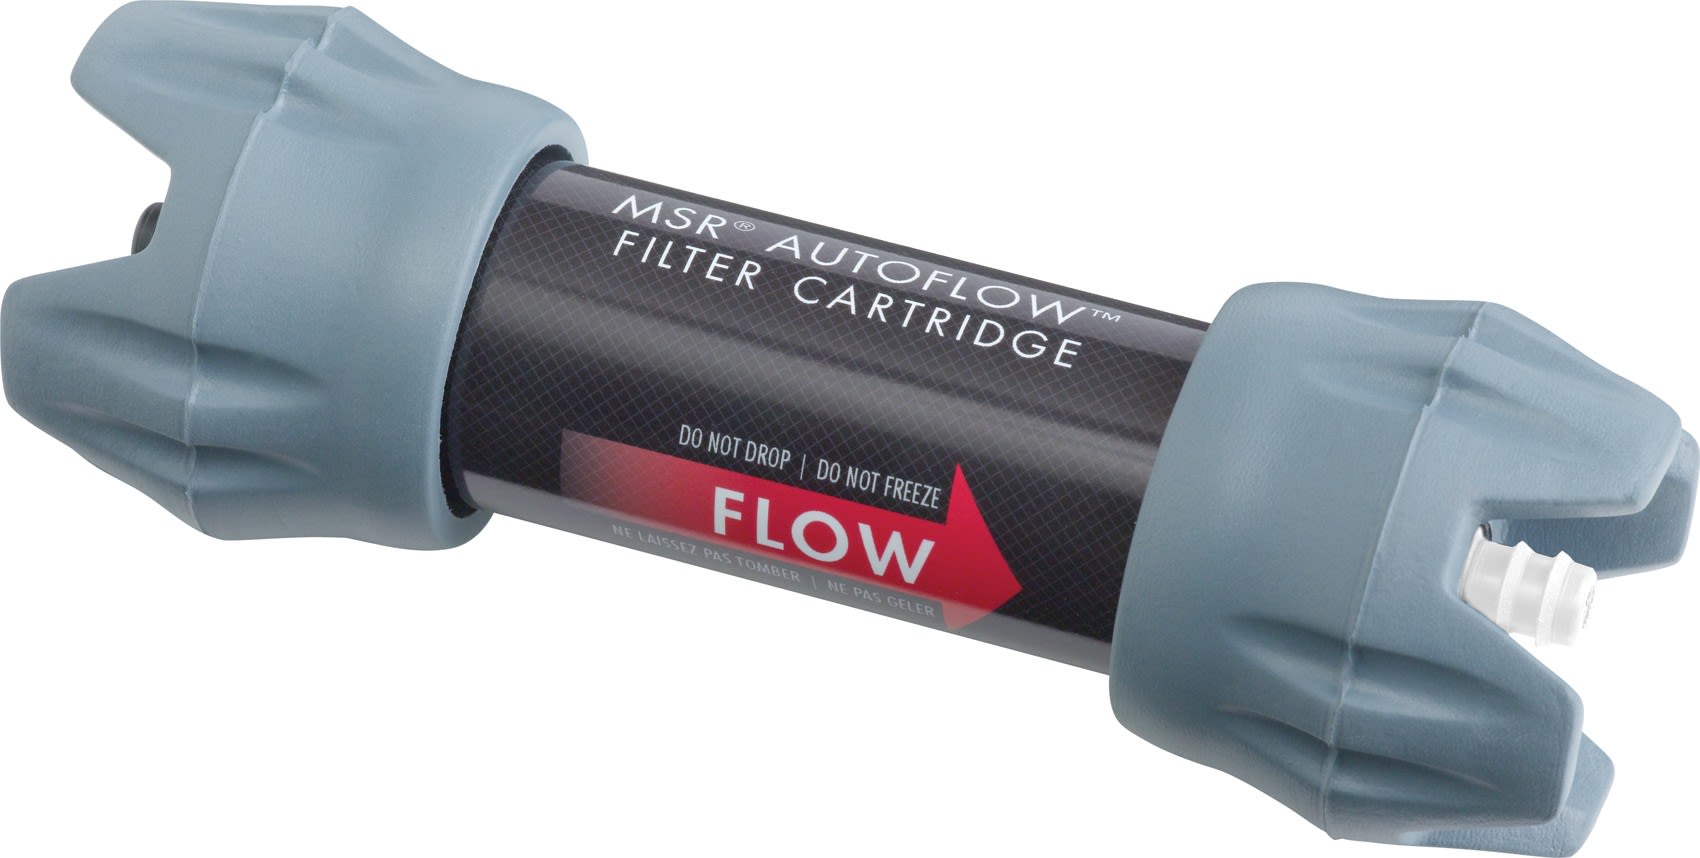 MSR Autoflow Replacement Cartridge Grau- Wasseraufbereitung- Grsse One Size - Farbe Grey unter MSR